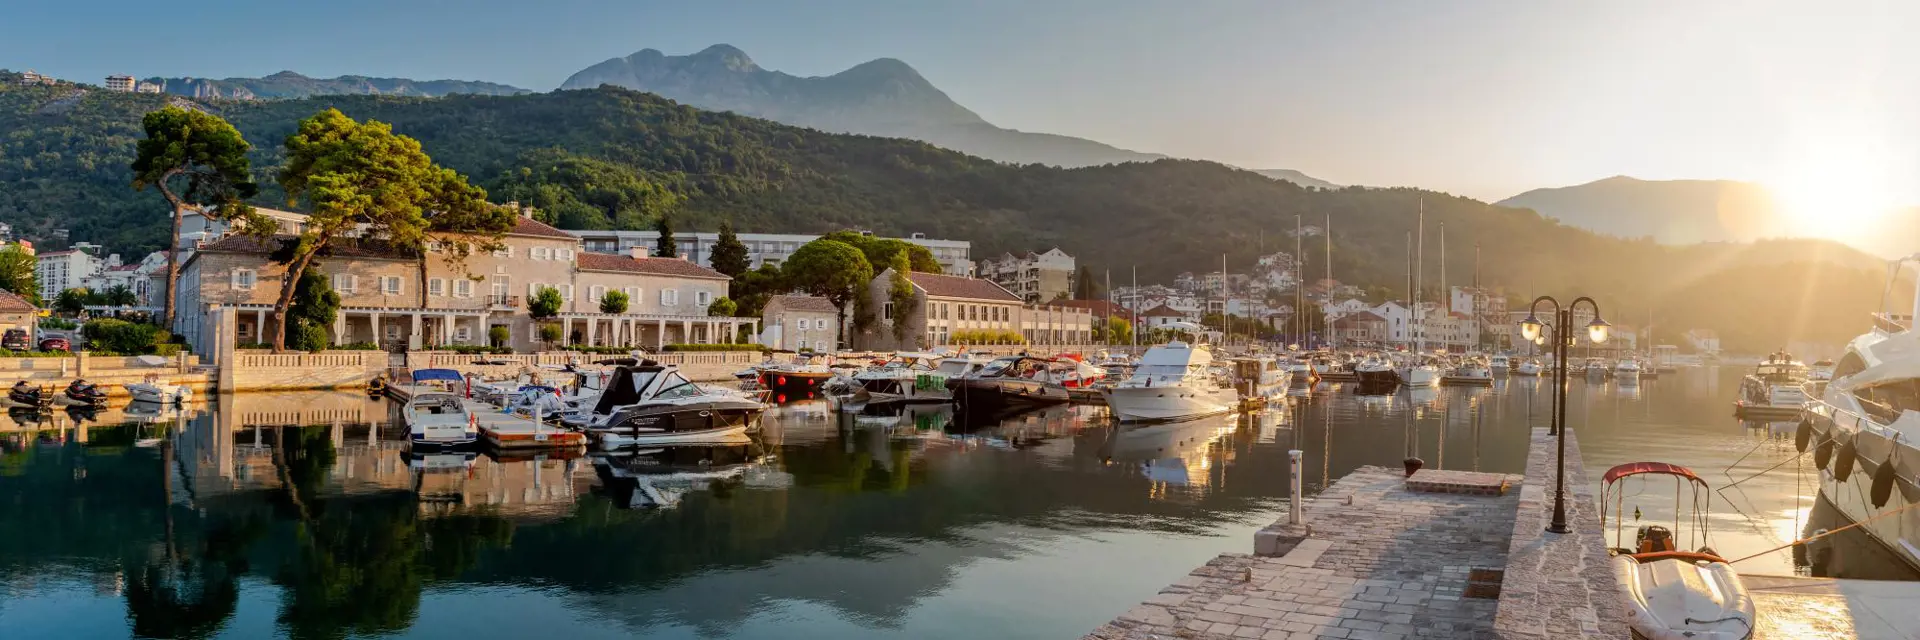 boetiekhotel lazure marina ligging montenegro